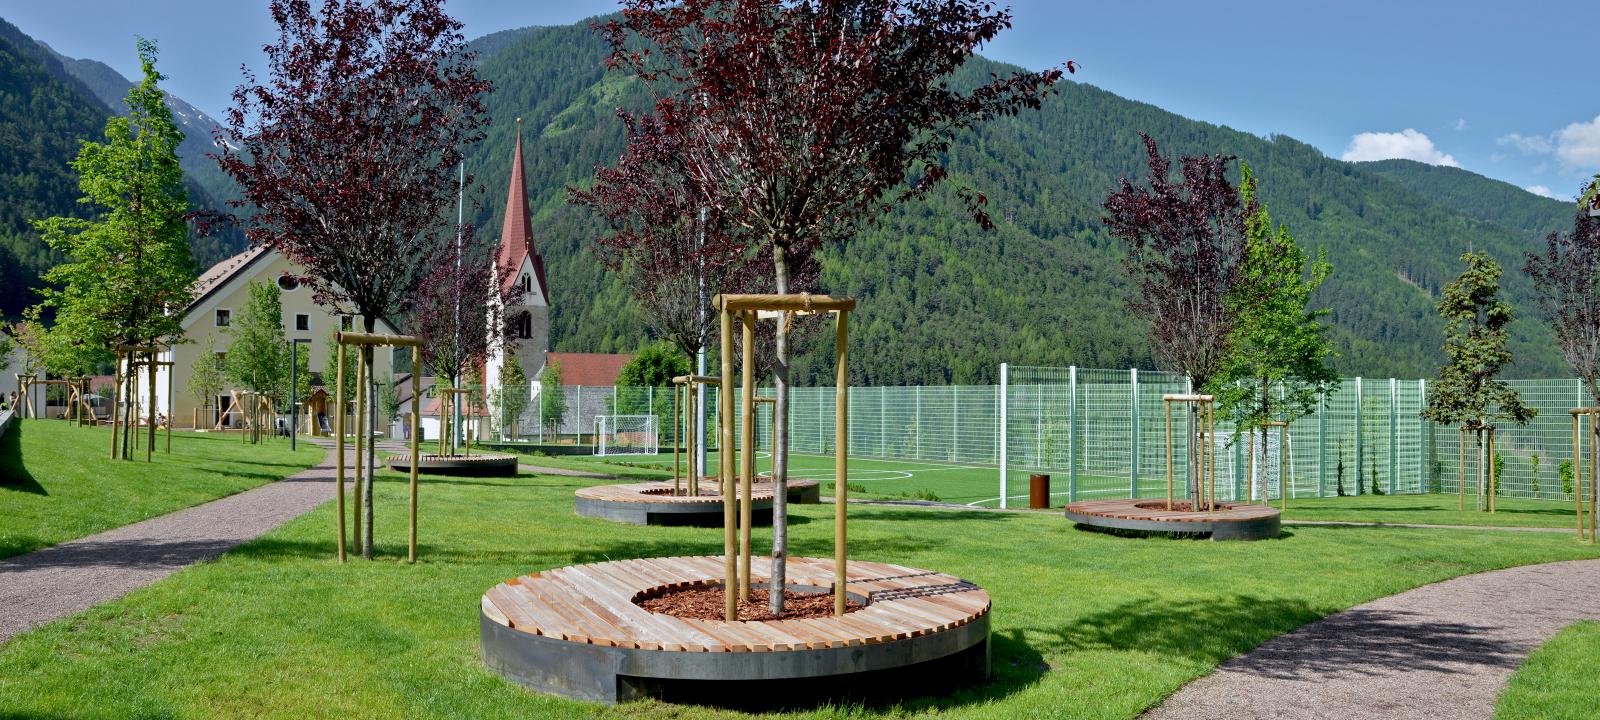 Giardino pubblico con alberi e posti da sedere 